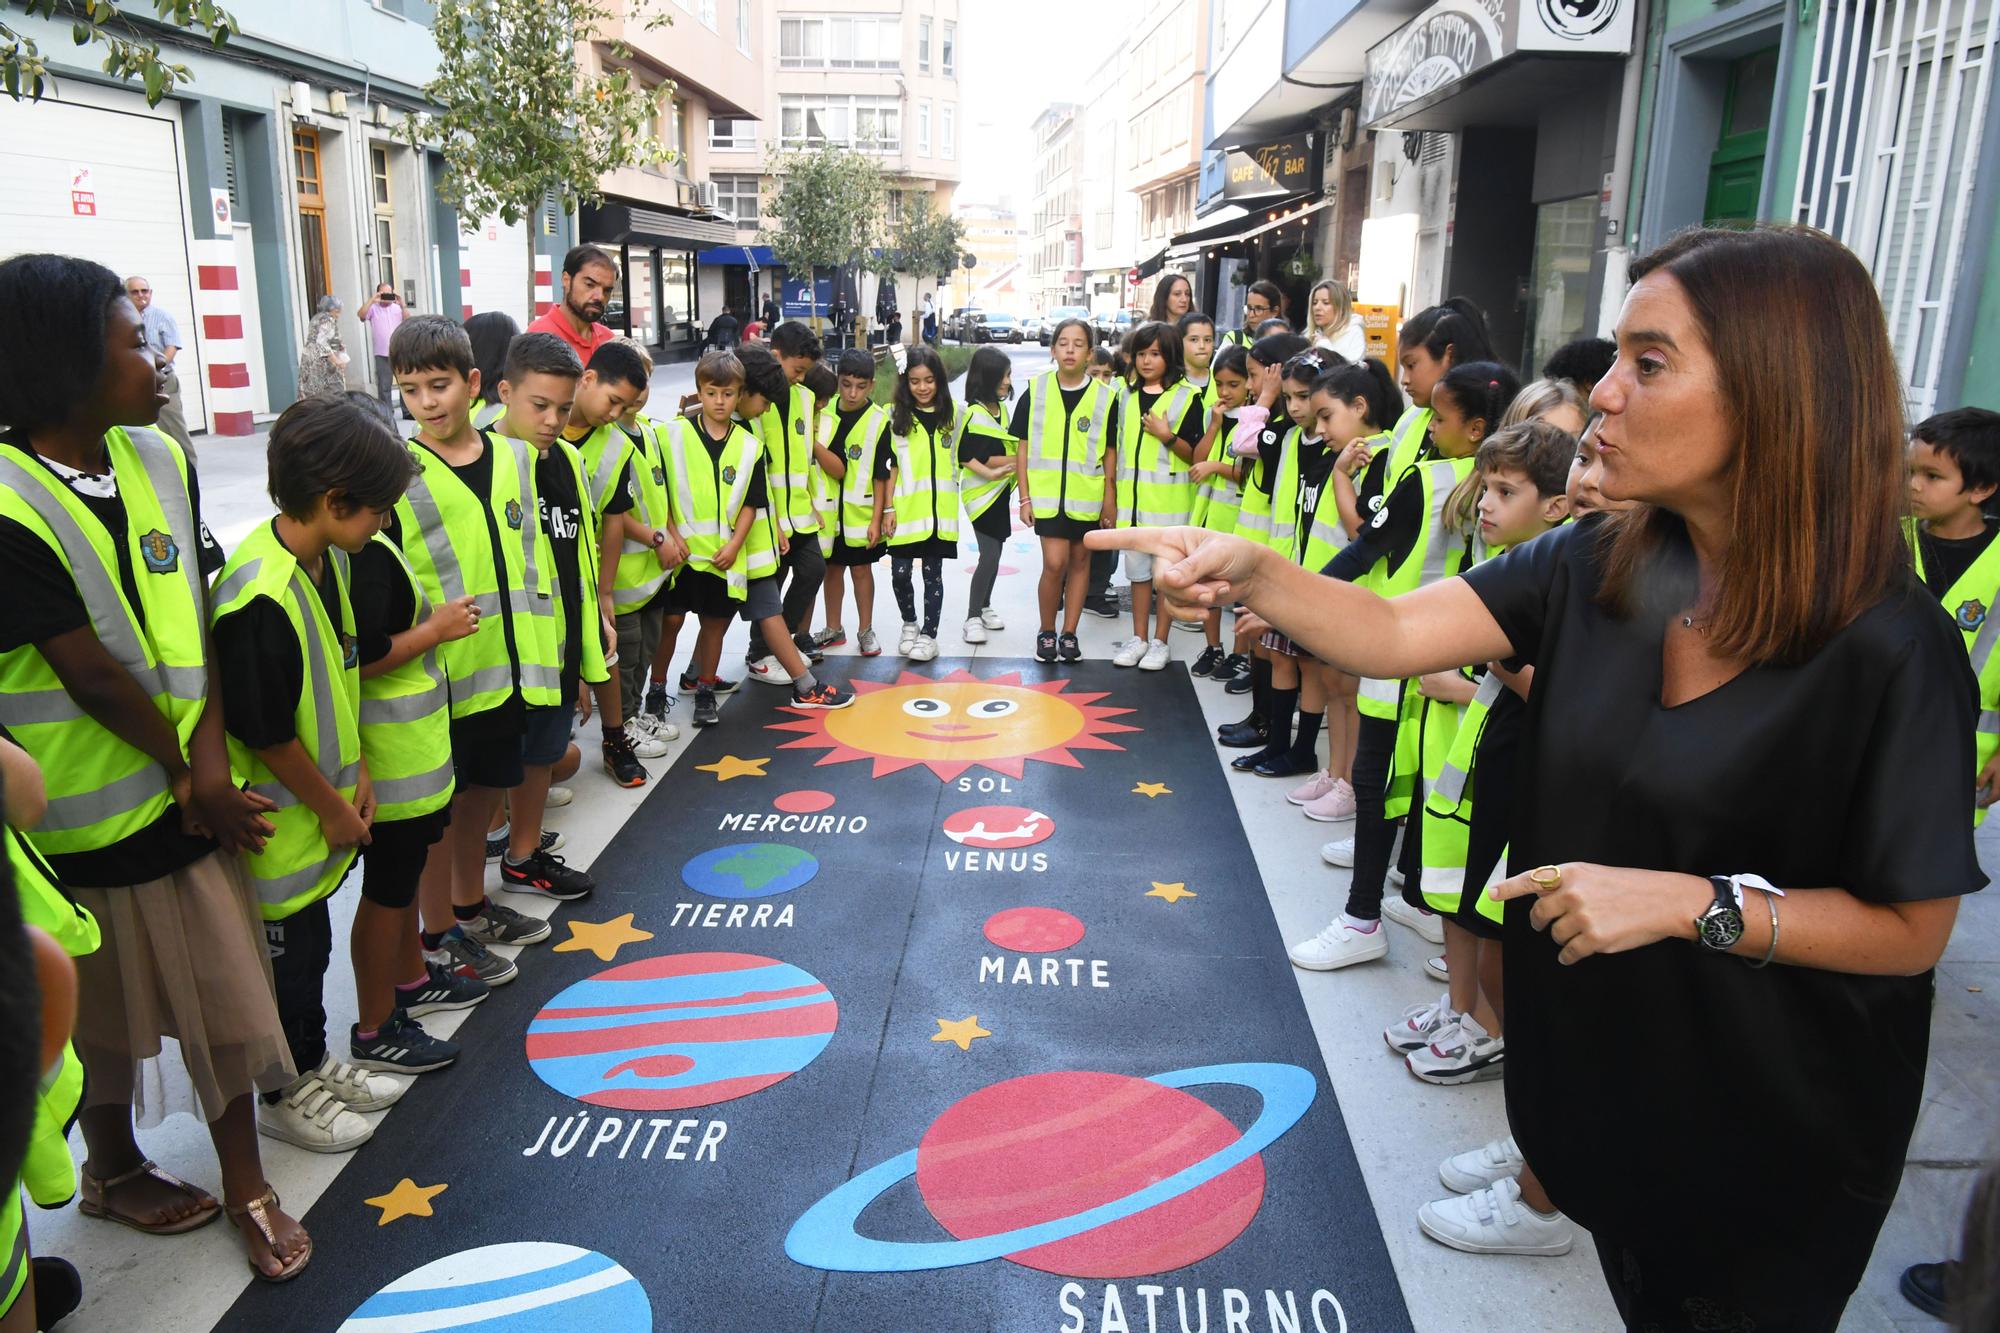 La alcaldesa acompaña a escolares del colegio Sagrada Familia en una actividad de educación vial